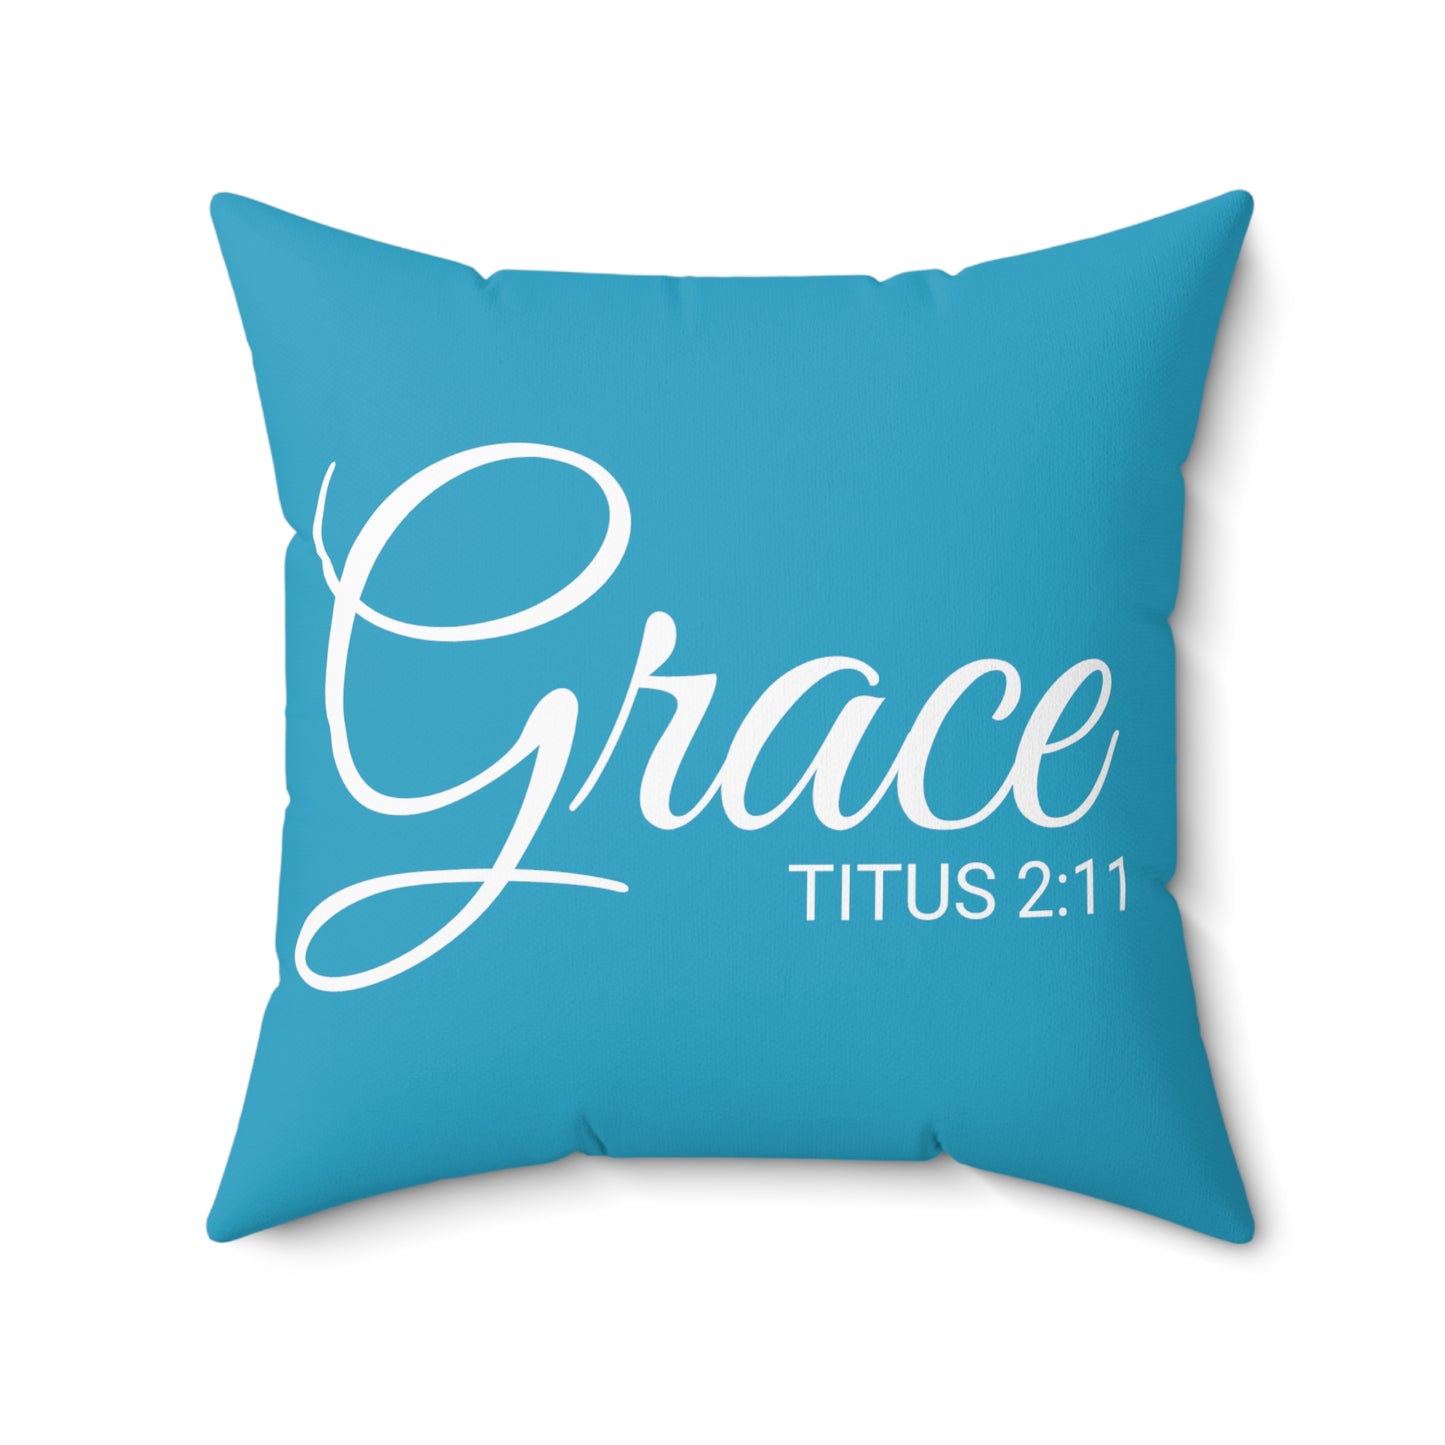 Scripture Grace Titus 2:11 Bible Verse Pillow